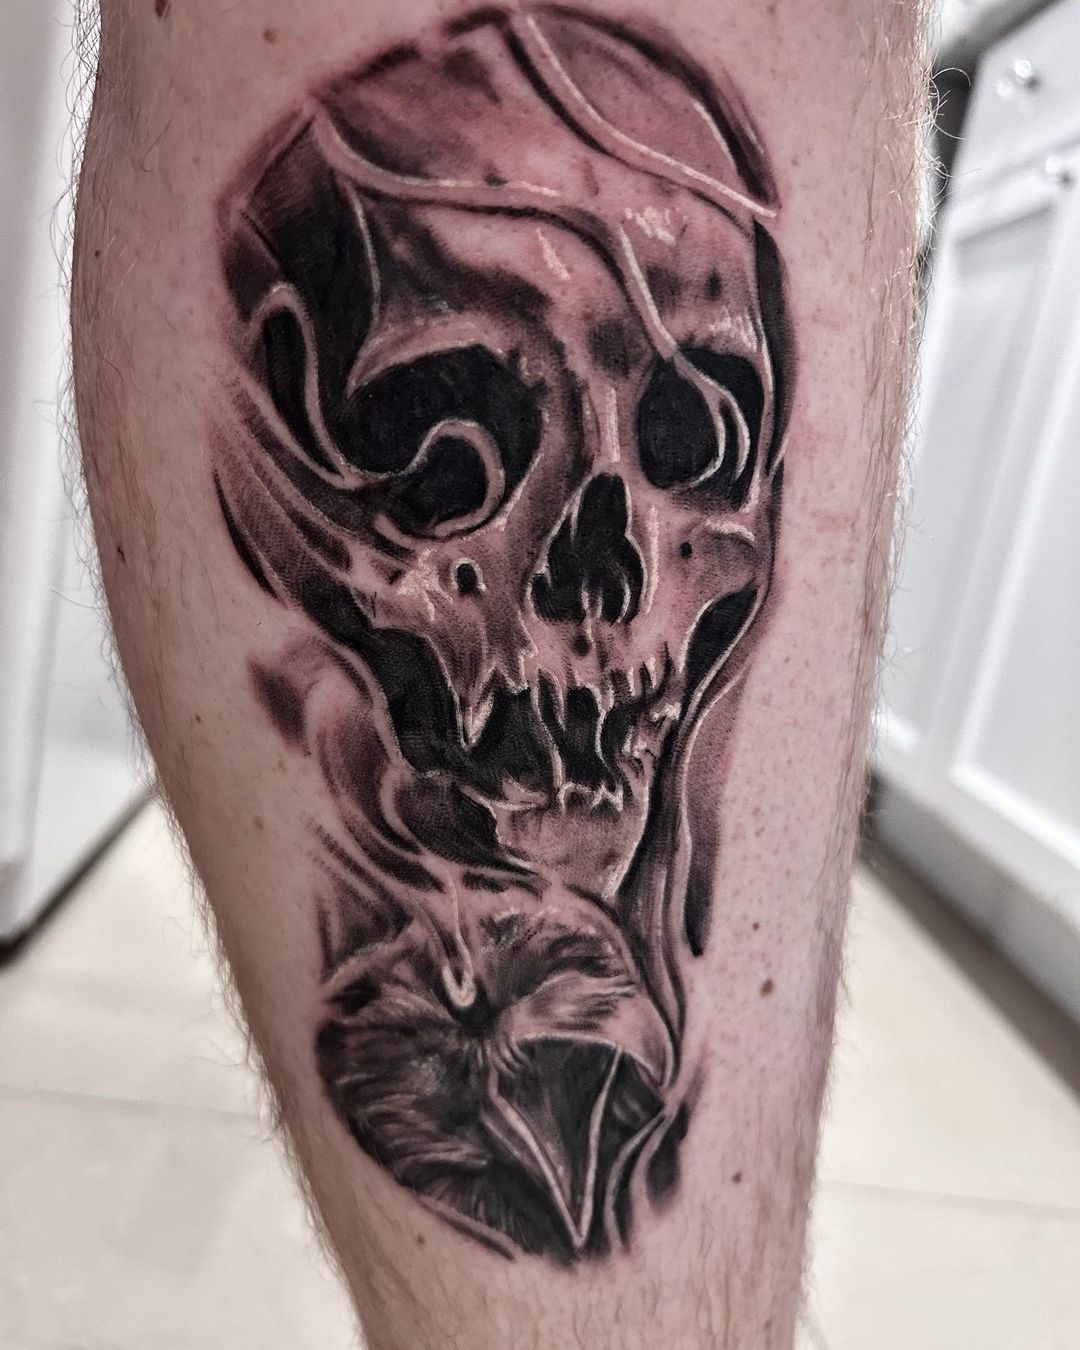 Skull tattoo design by martinell artistry